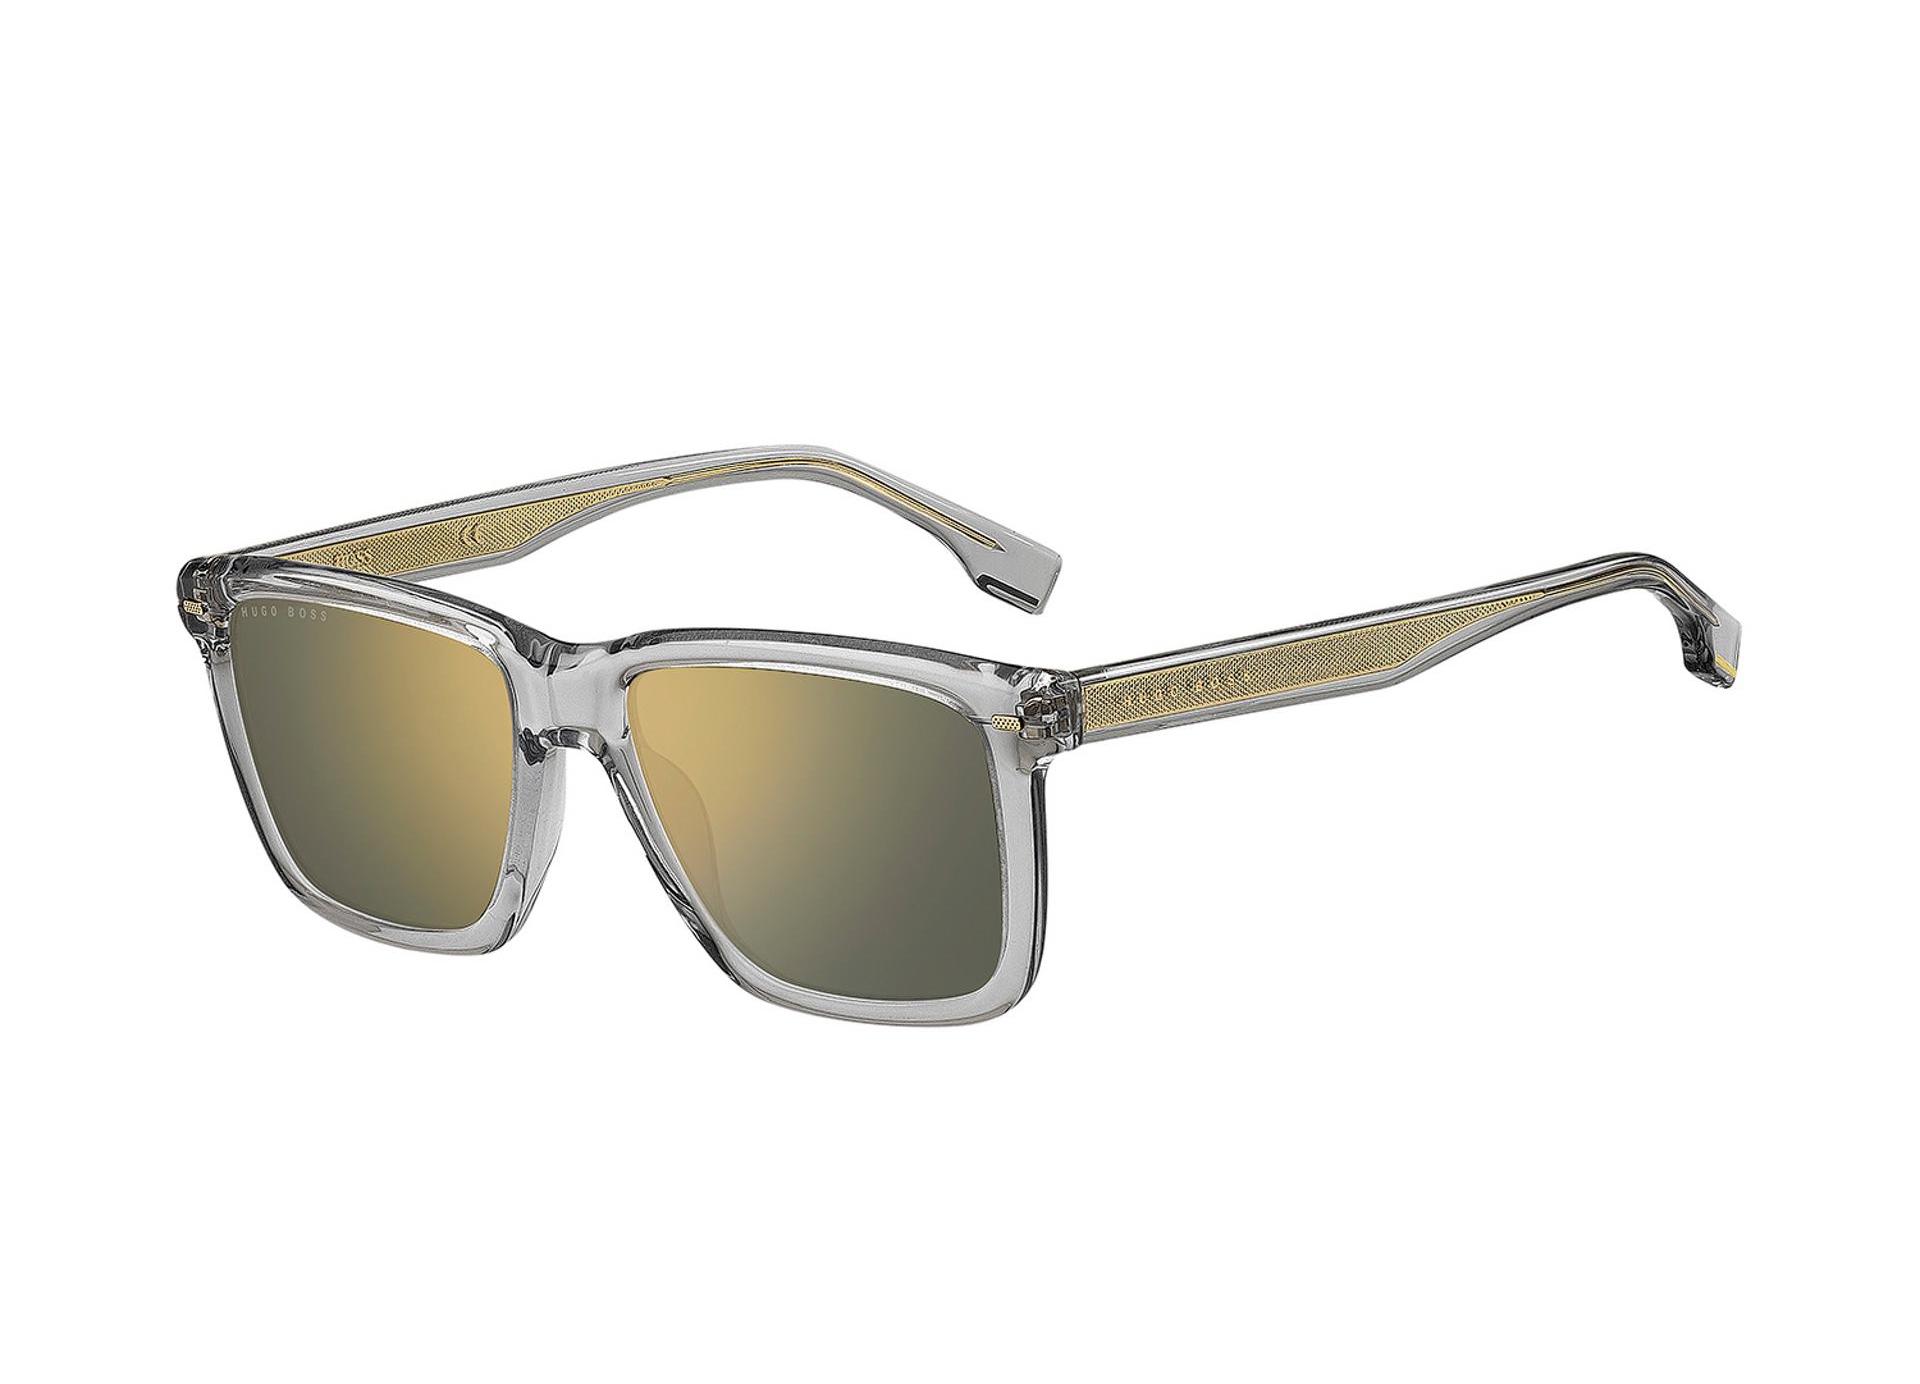 Hugo Boss sunglasses in kerala